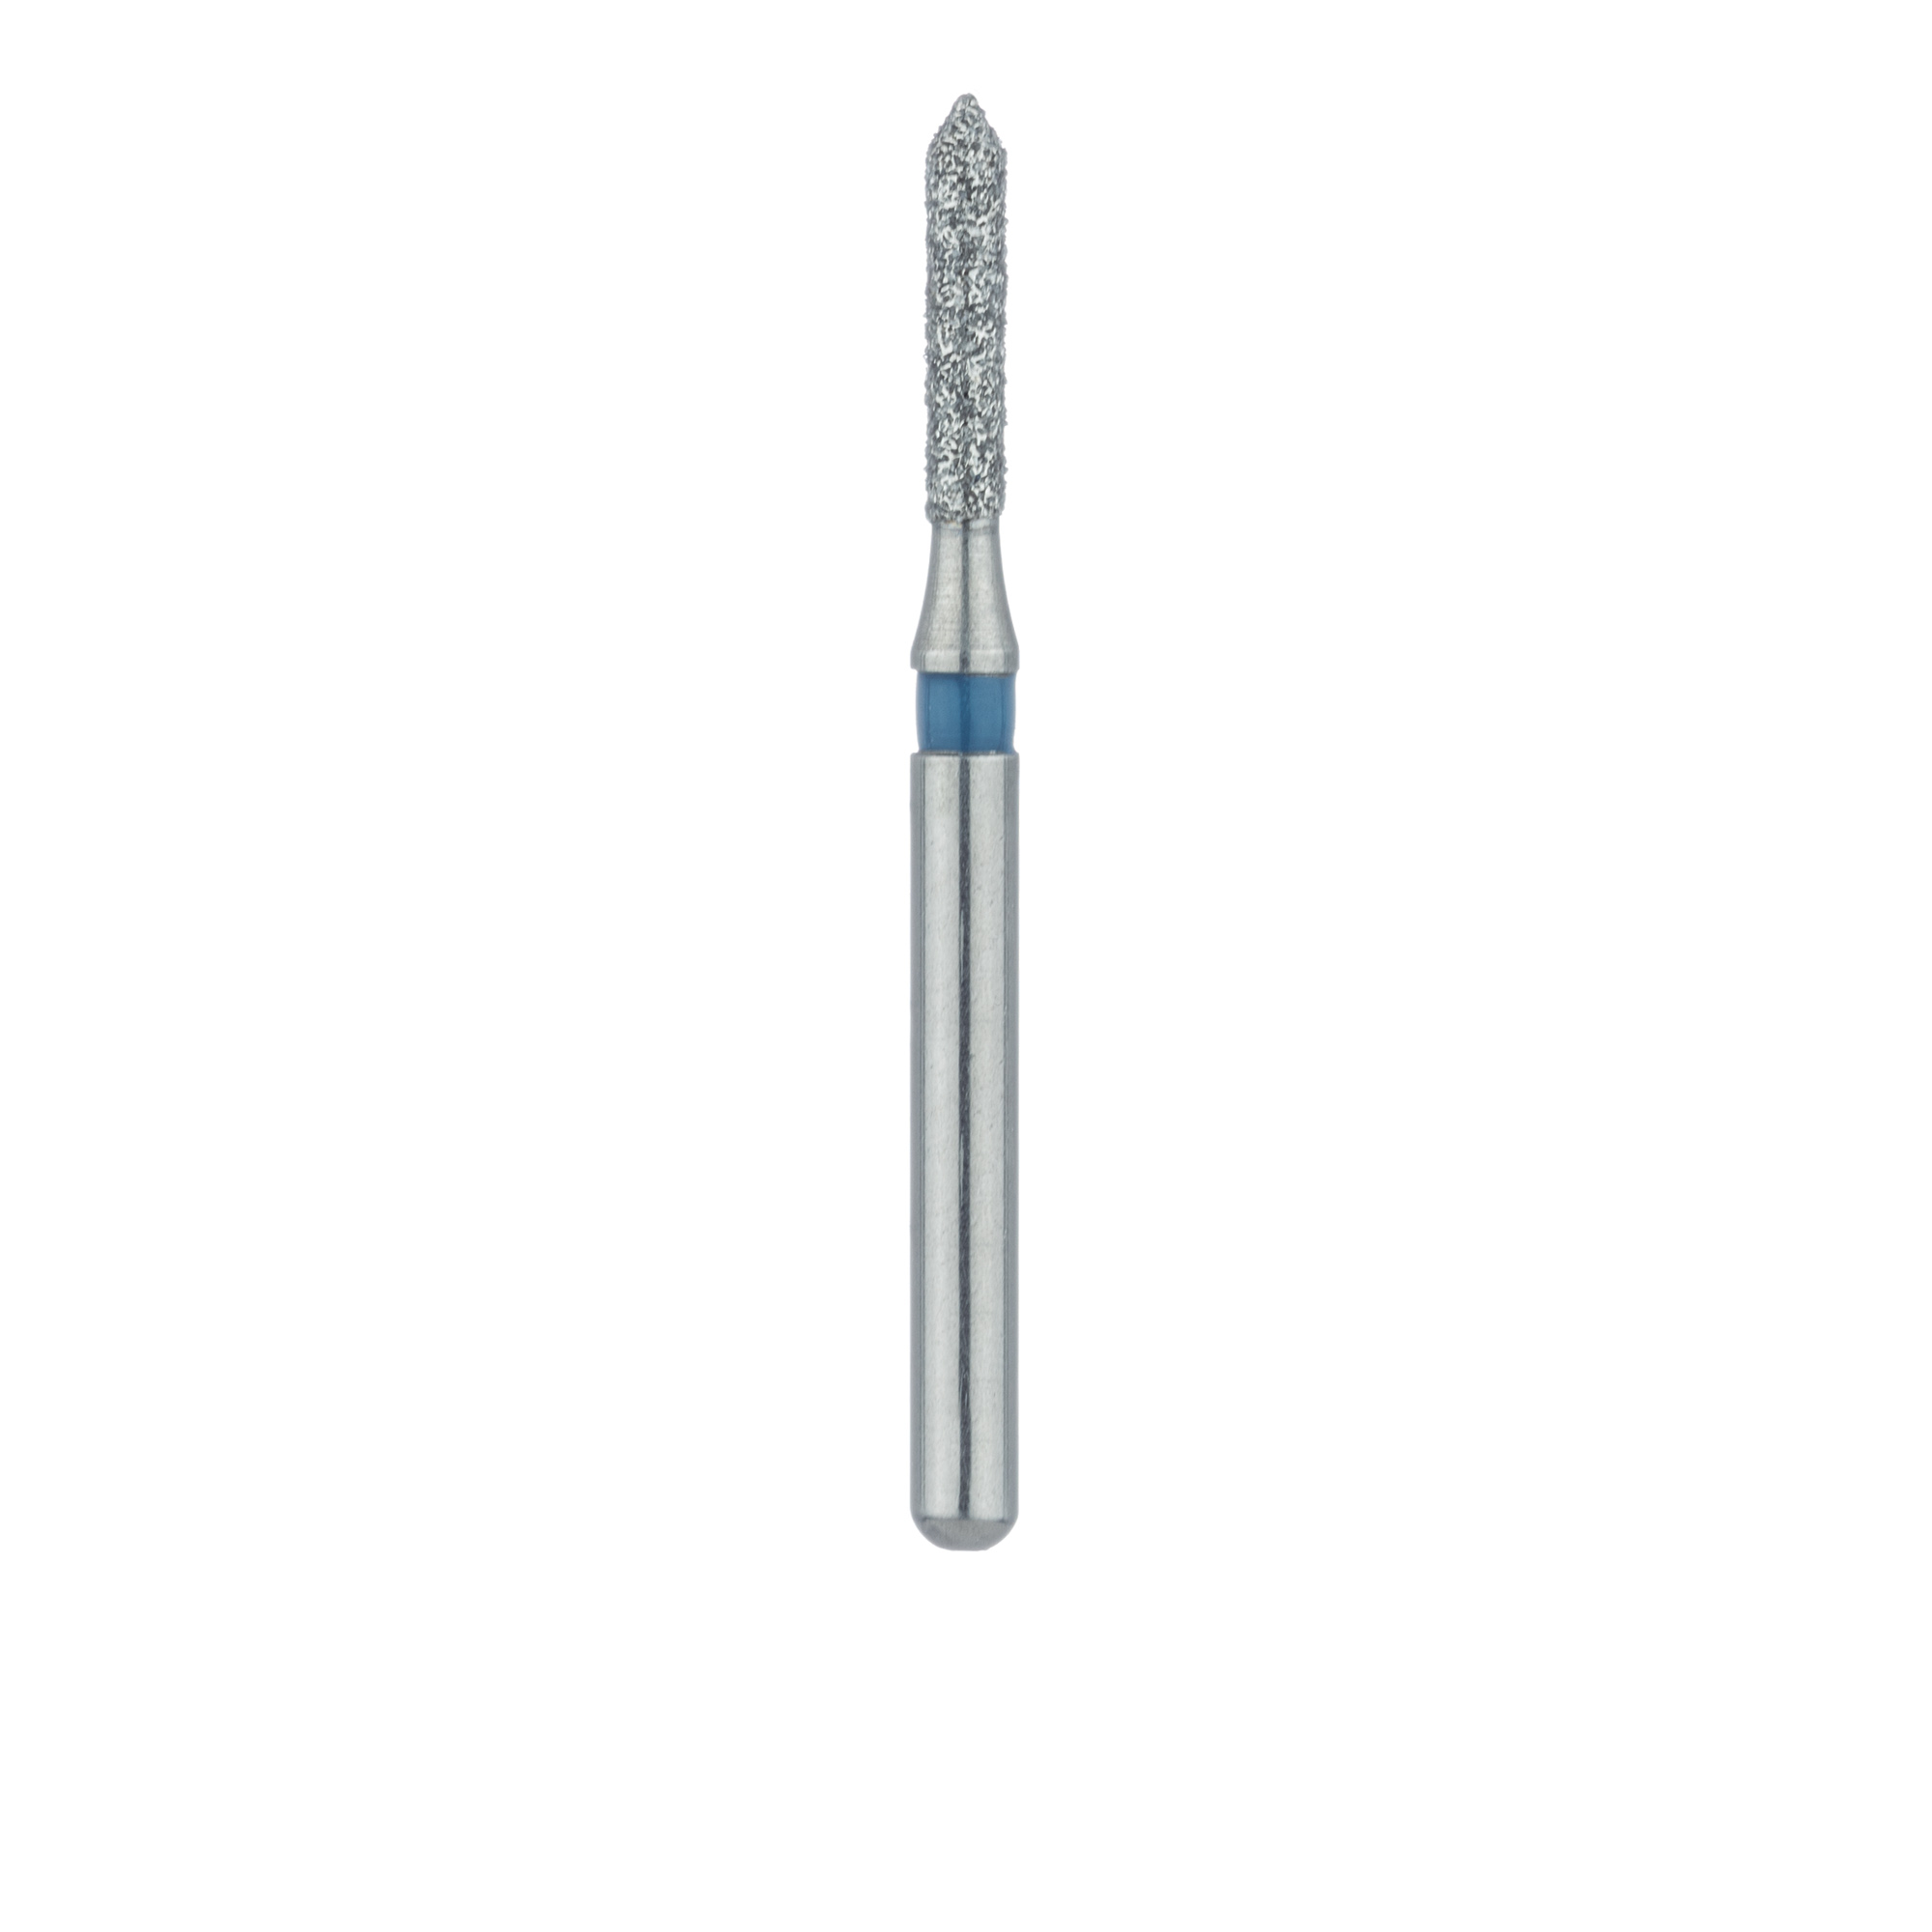 884-012-FG Pointed Tip Cylinder Diamond Bur, 1.2mm Ø, Medium, FG